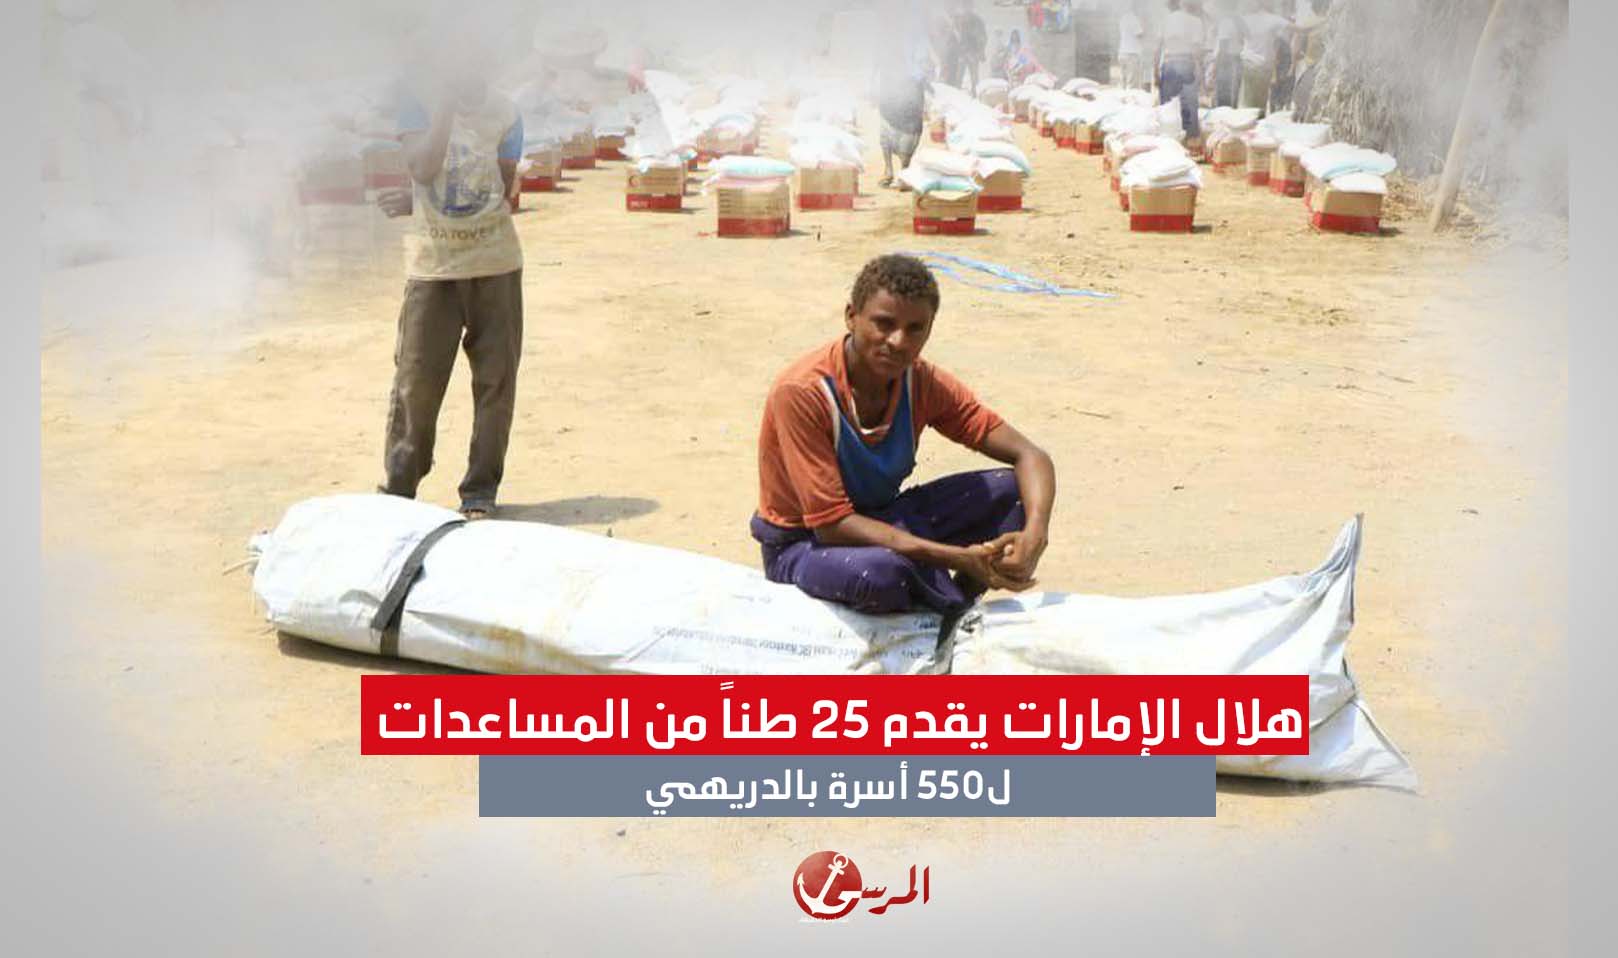 هلال الإمارات يقدم 25 طناً من المساعدات ل550 أسرة بالدريهمي